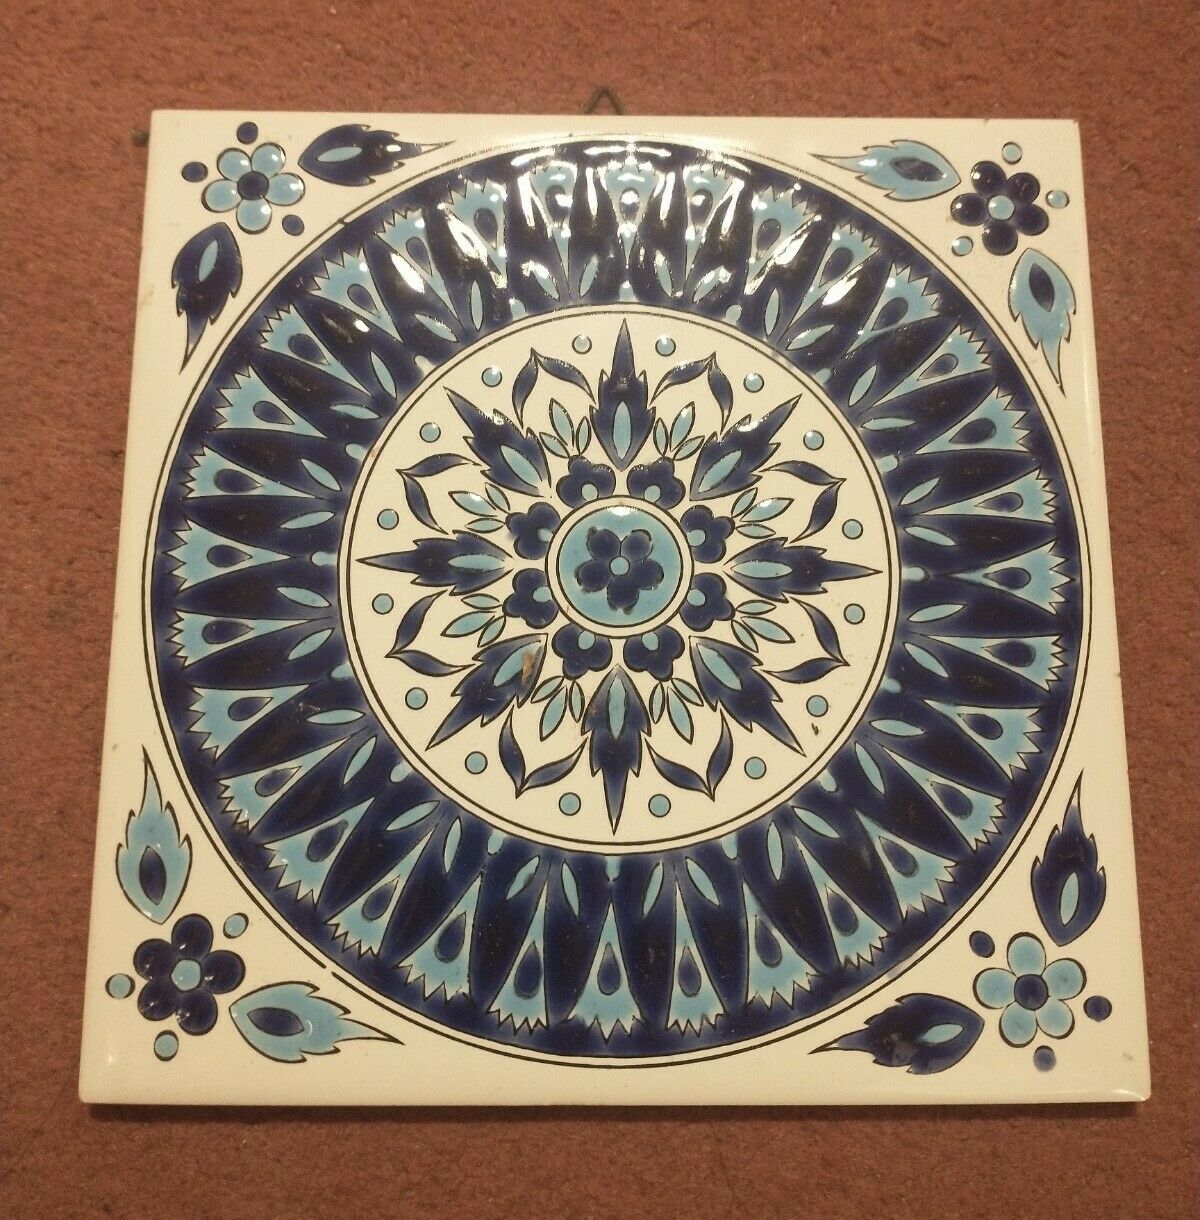 Blue & white symmetrical & floral antique aesthetic design antique tile